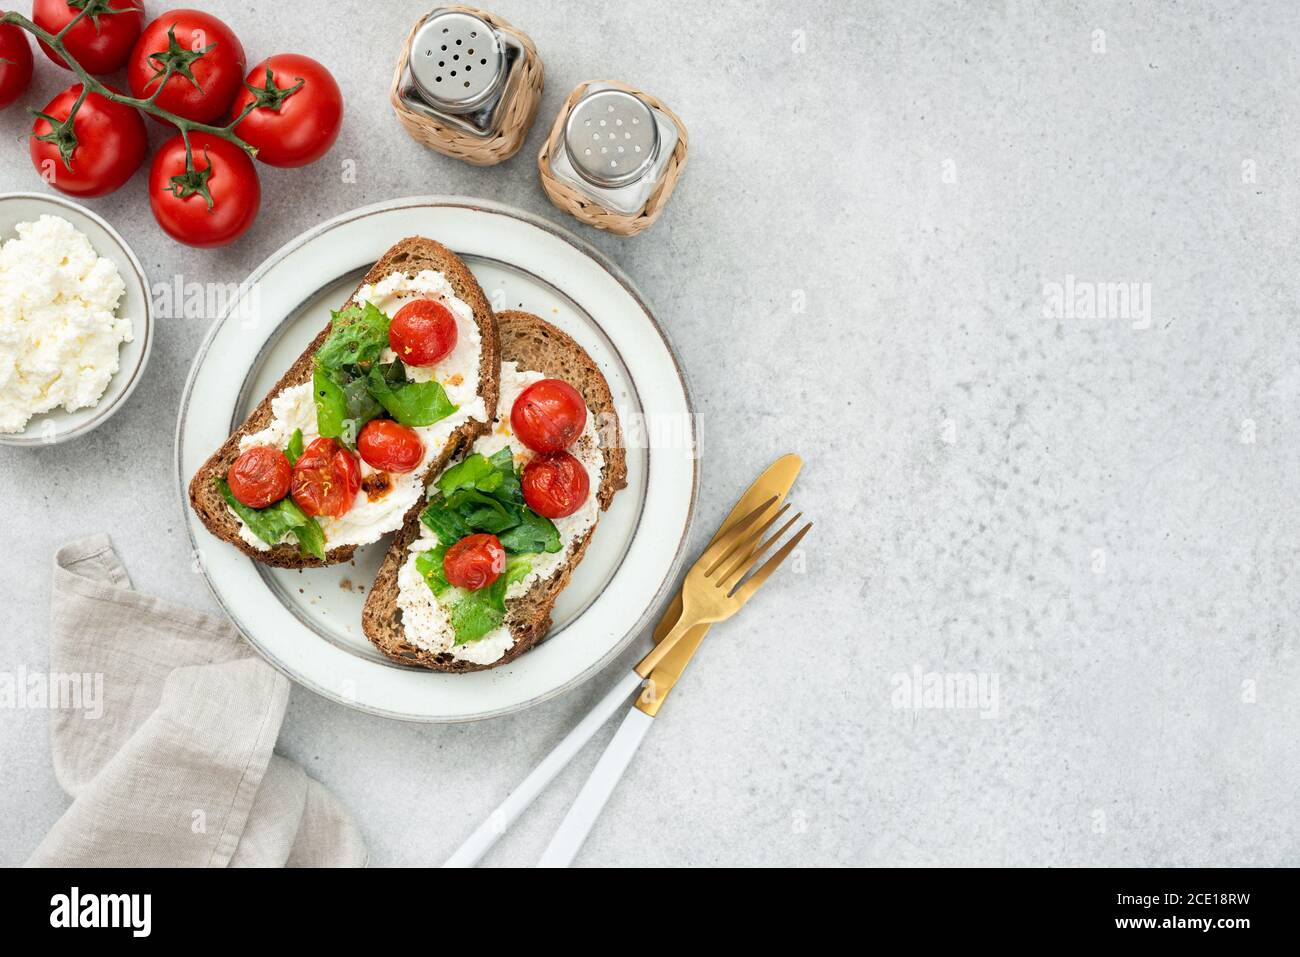 Bruschetta italiana sana con ricotta, lattuga romena e pomodori ciliegini arrostiti. Vista dall'alto del tavolo, spazio di copia Foto Stock